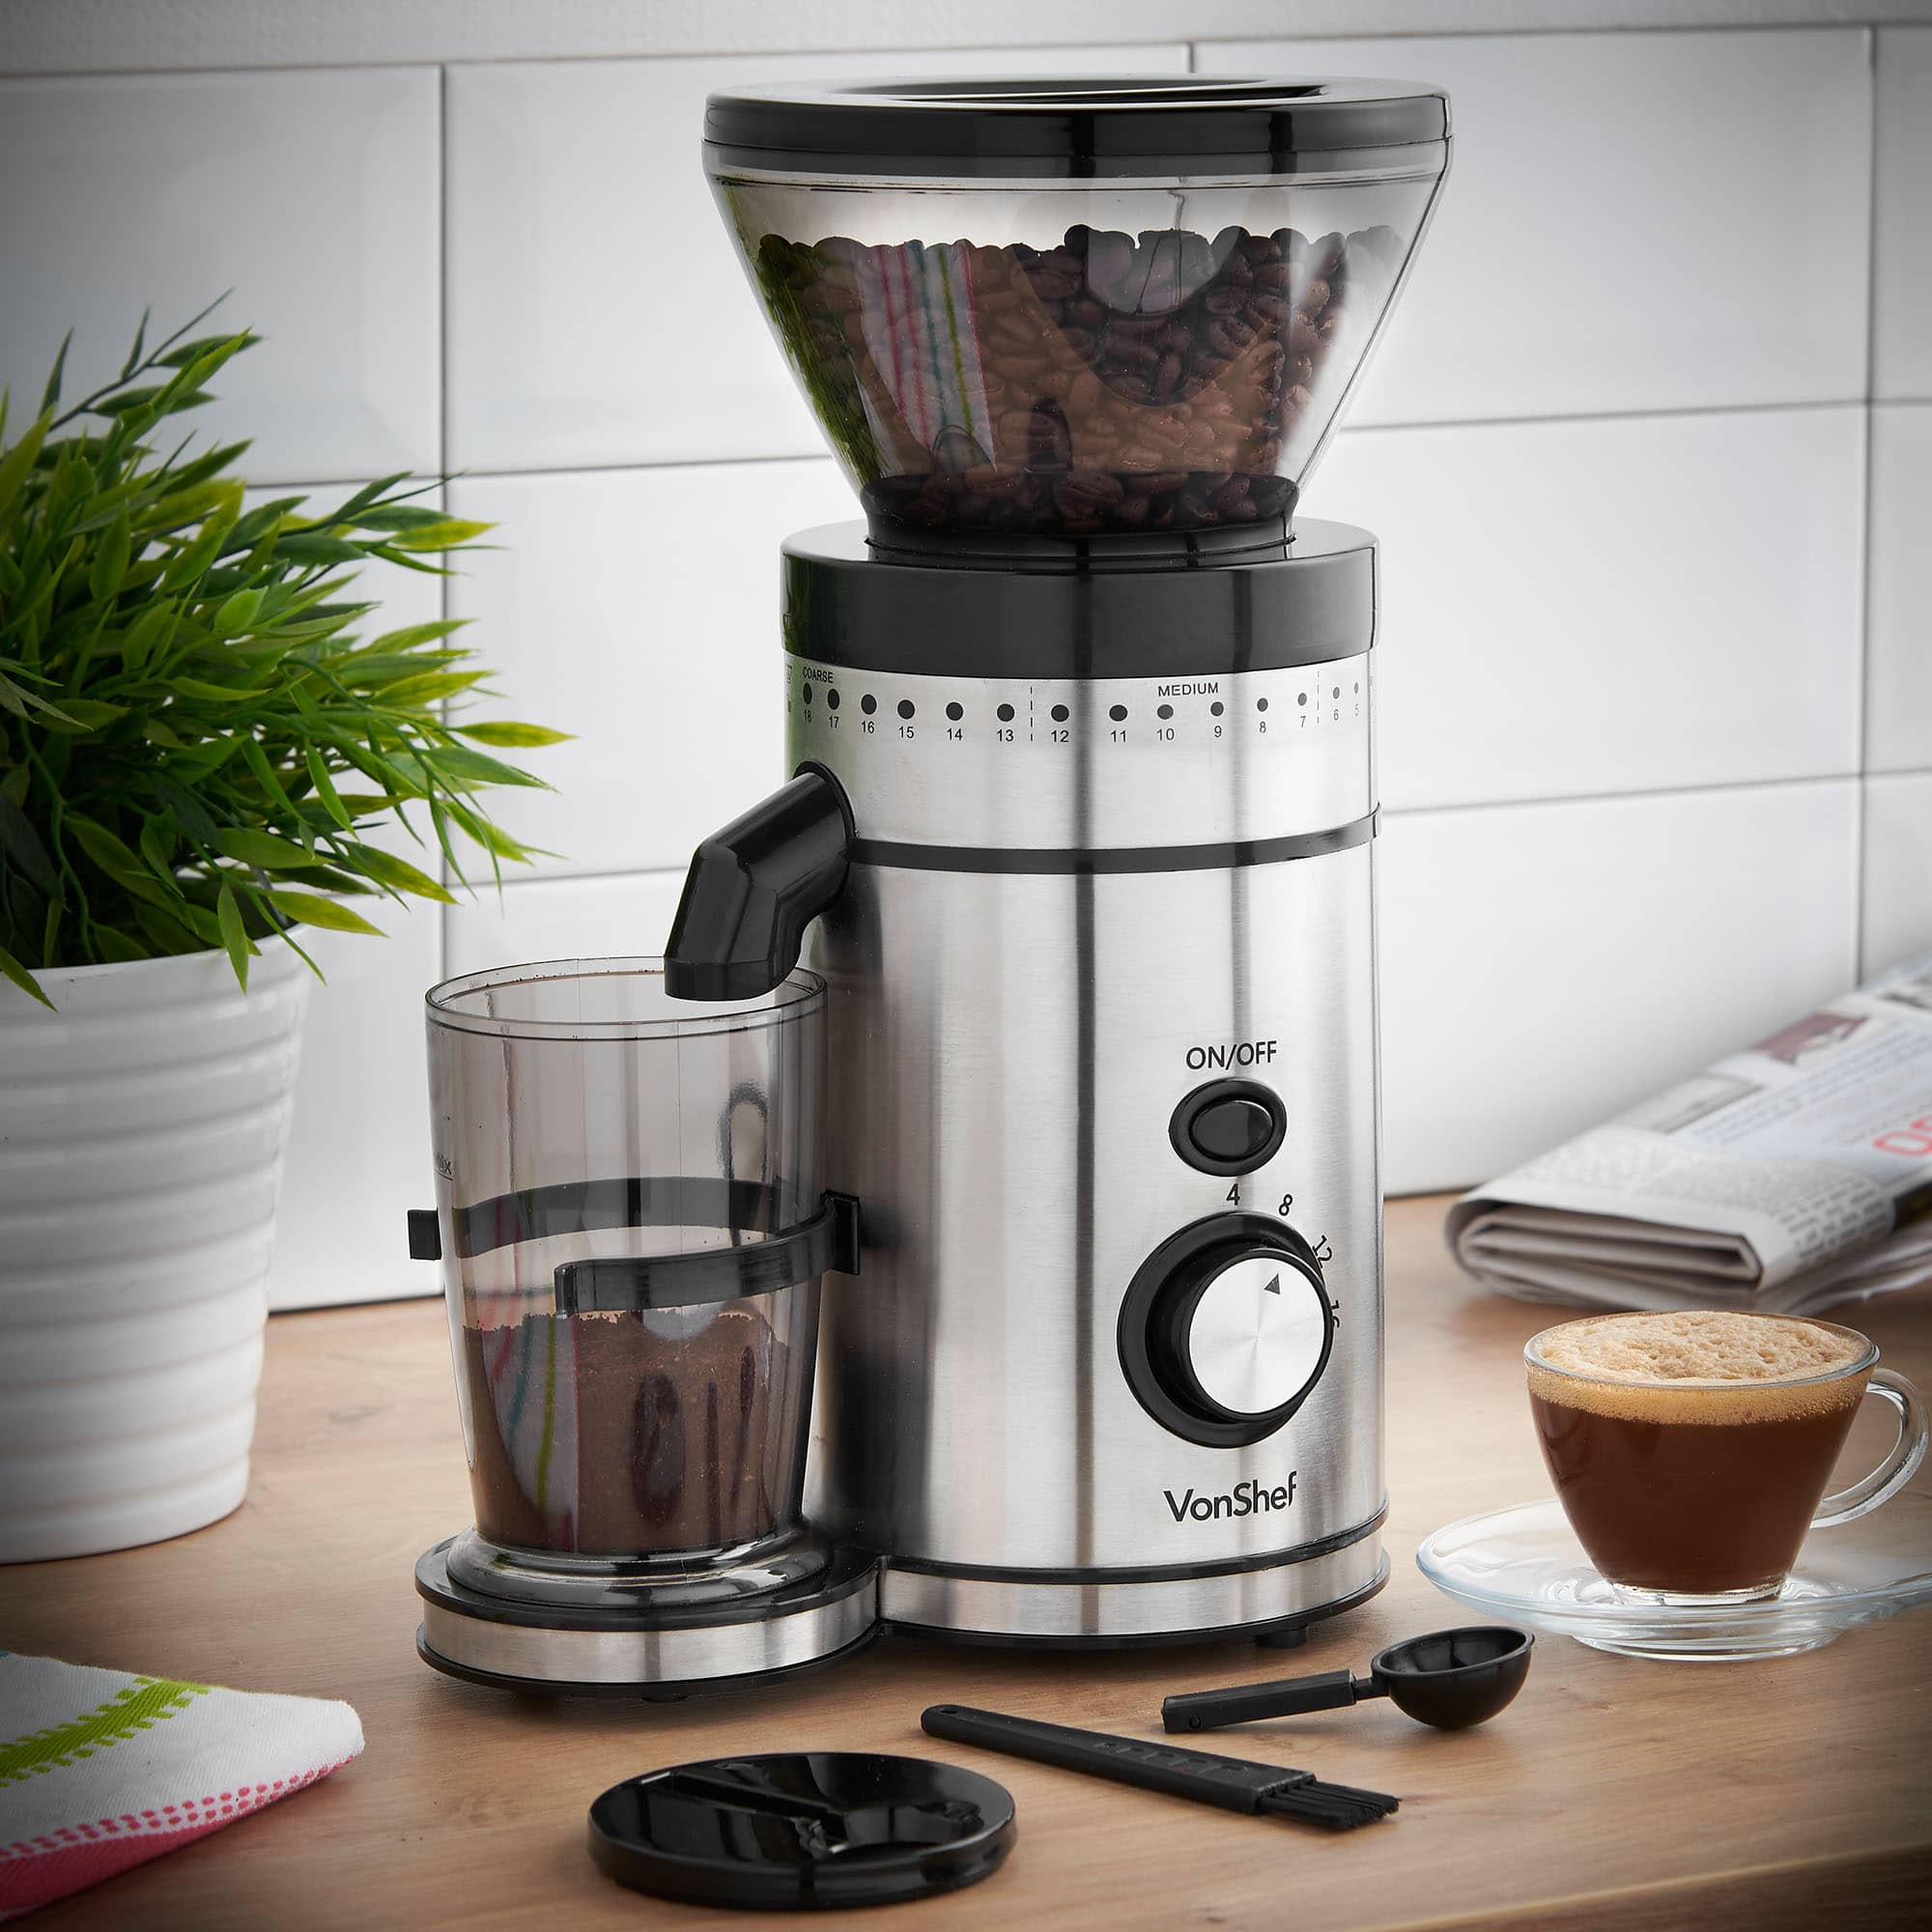 VonShef Premium Burr Coffee Grinder Review